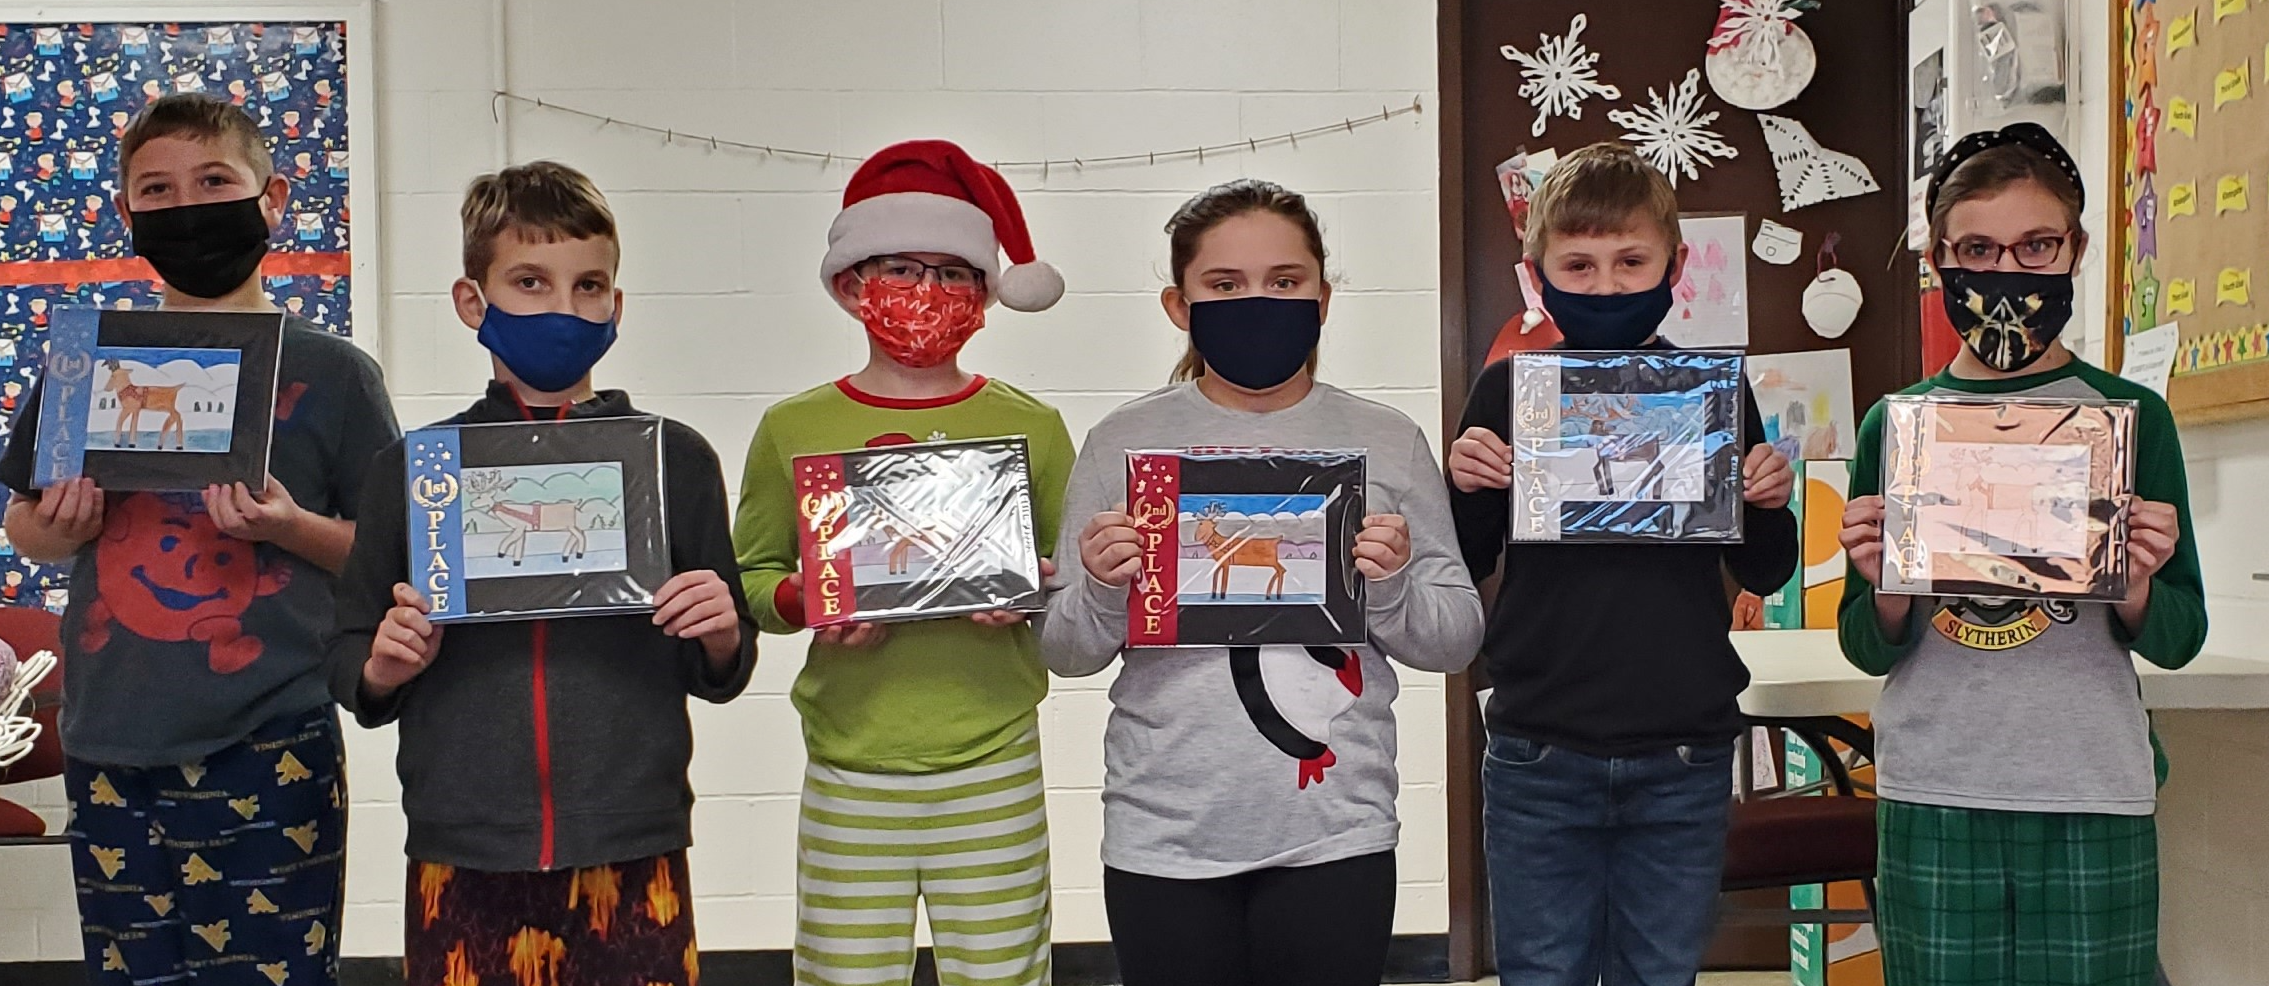 4th Grade Winners of Christmas Drawings - Reindeer